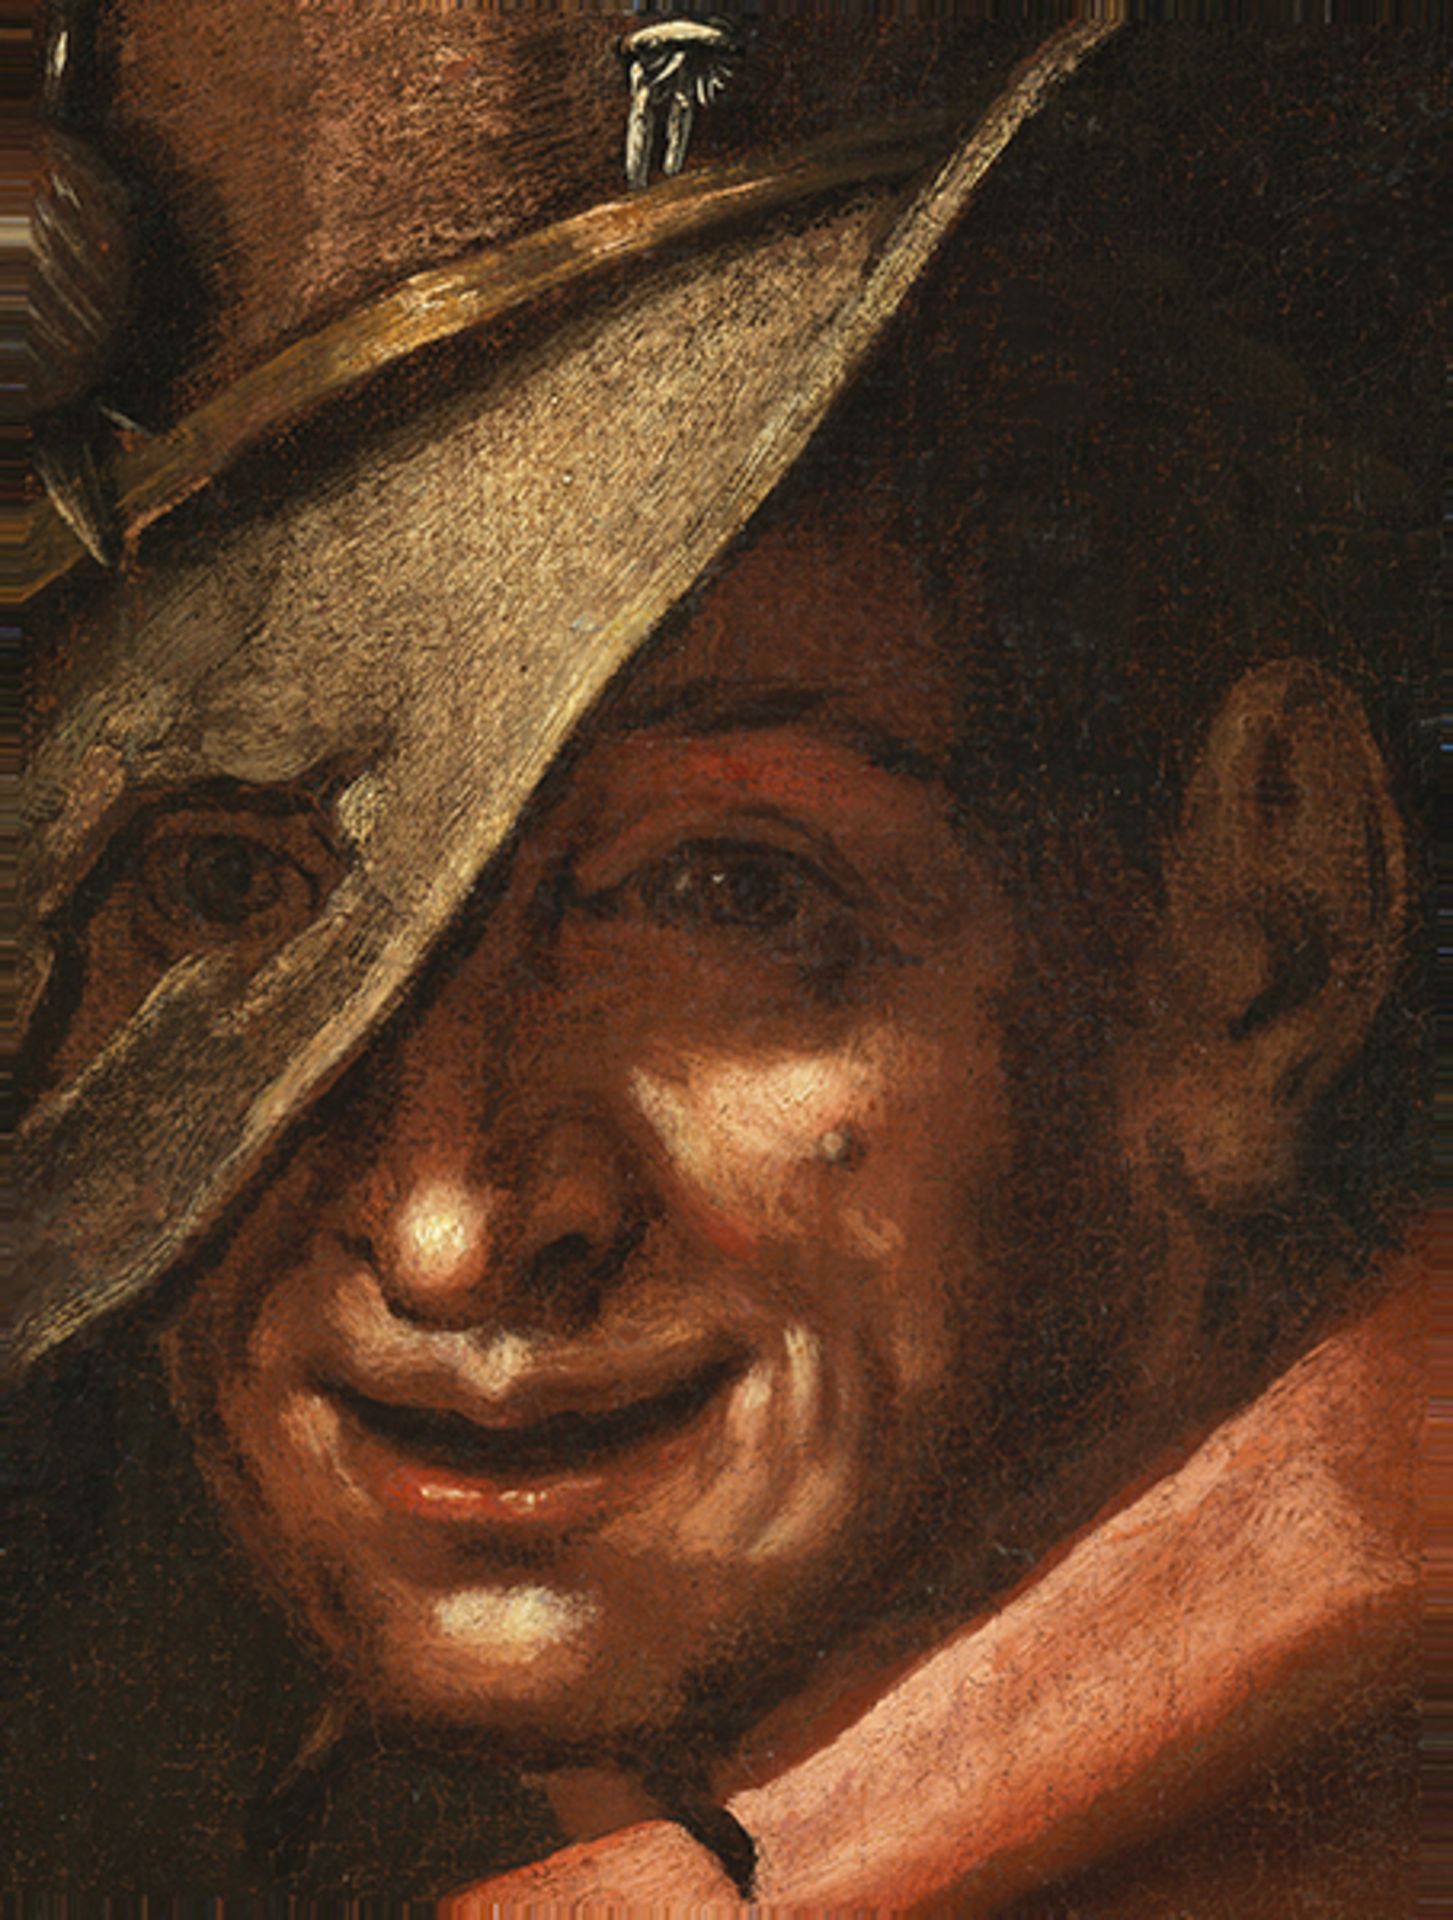 Maler des 17. Jahrhunderts LA BUONA VENTURA (DAS GLÜCK) Öl auf Leinwand. Doubliert. 95 x 75 cm. - Bild 2 aus 6